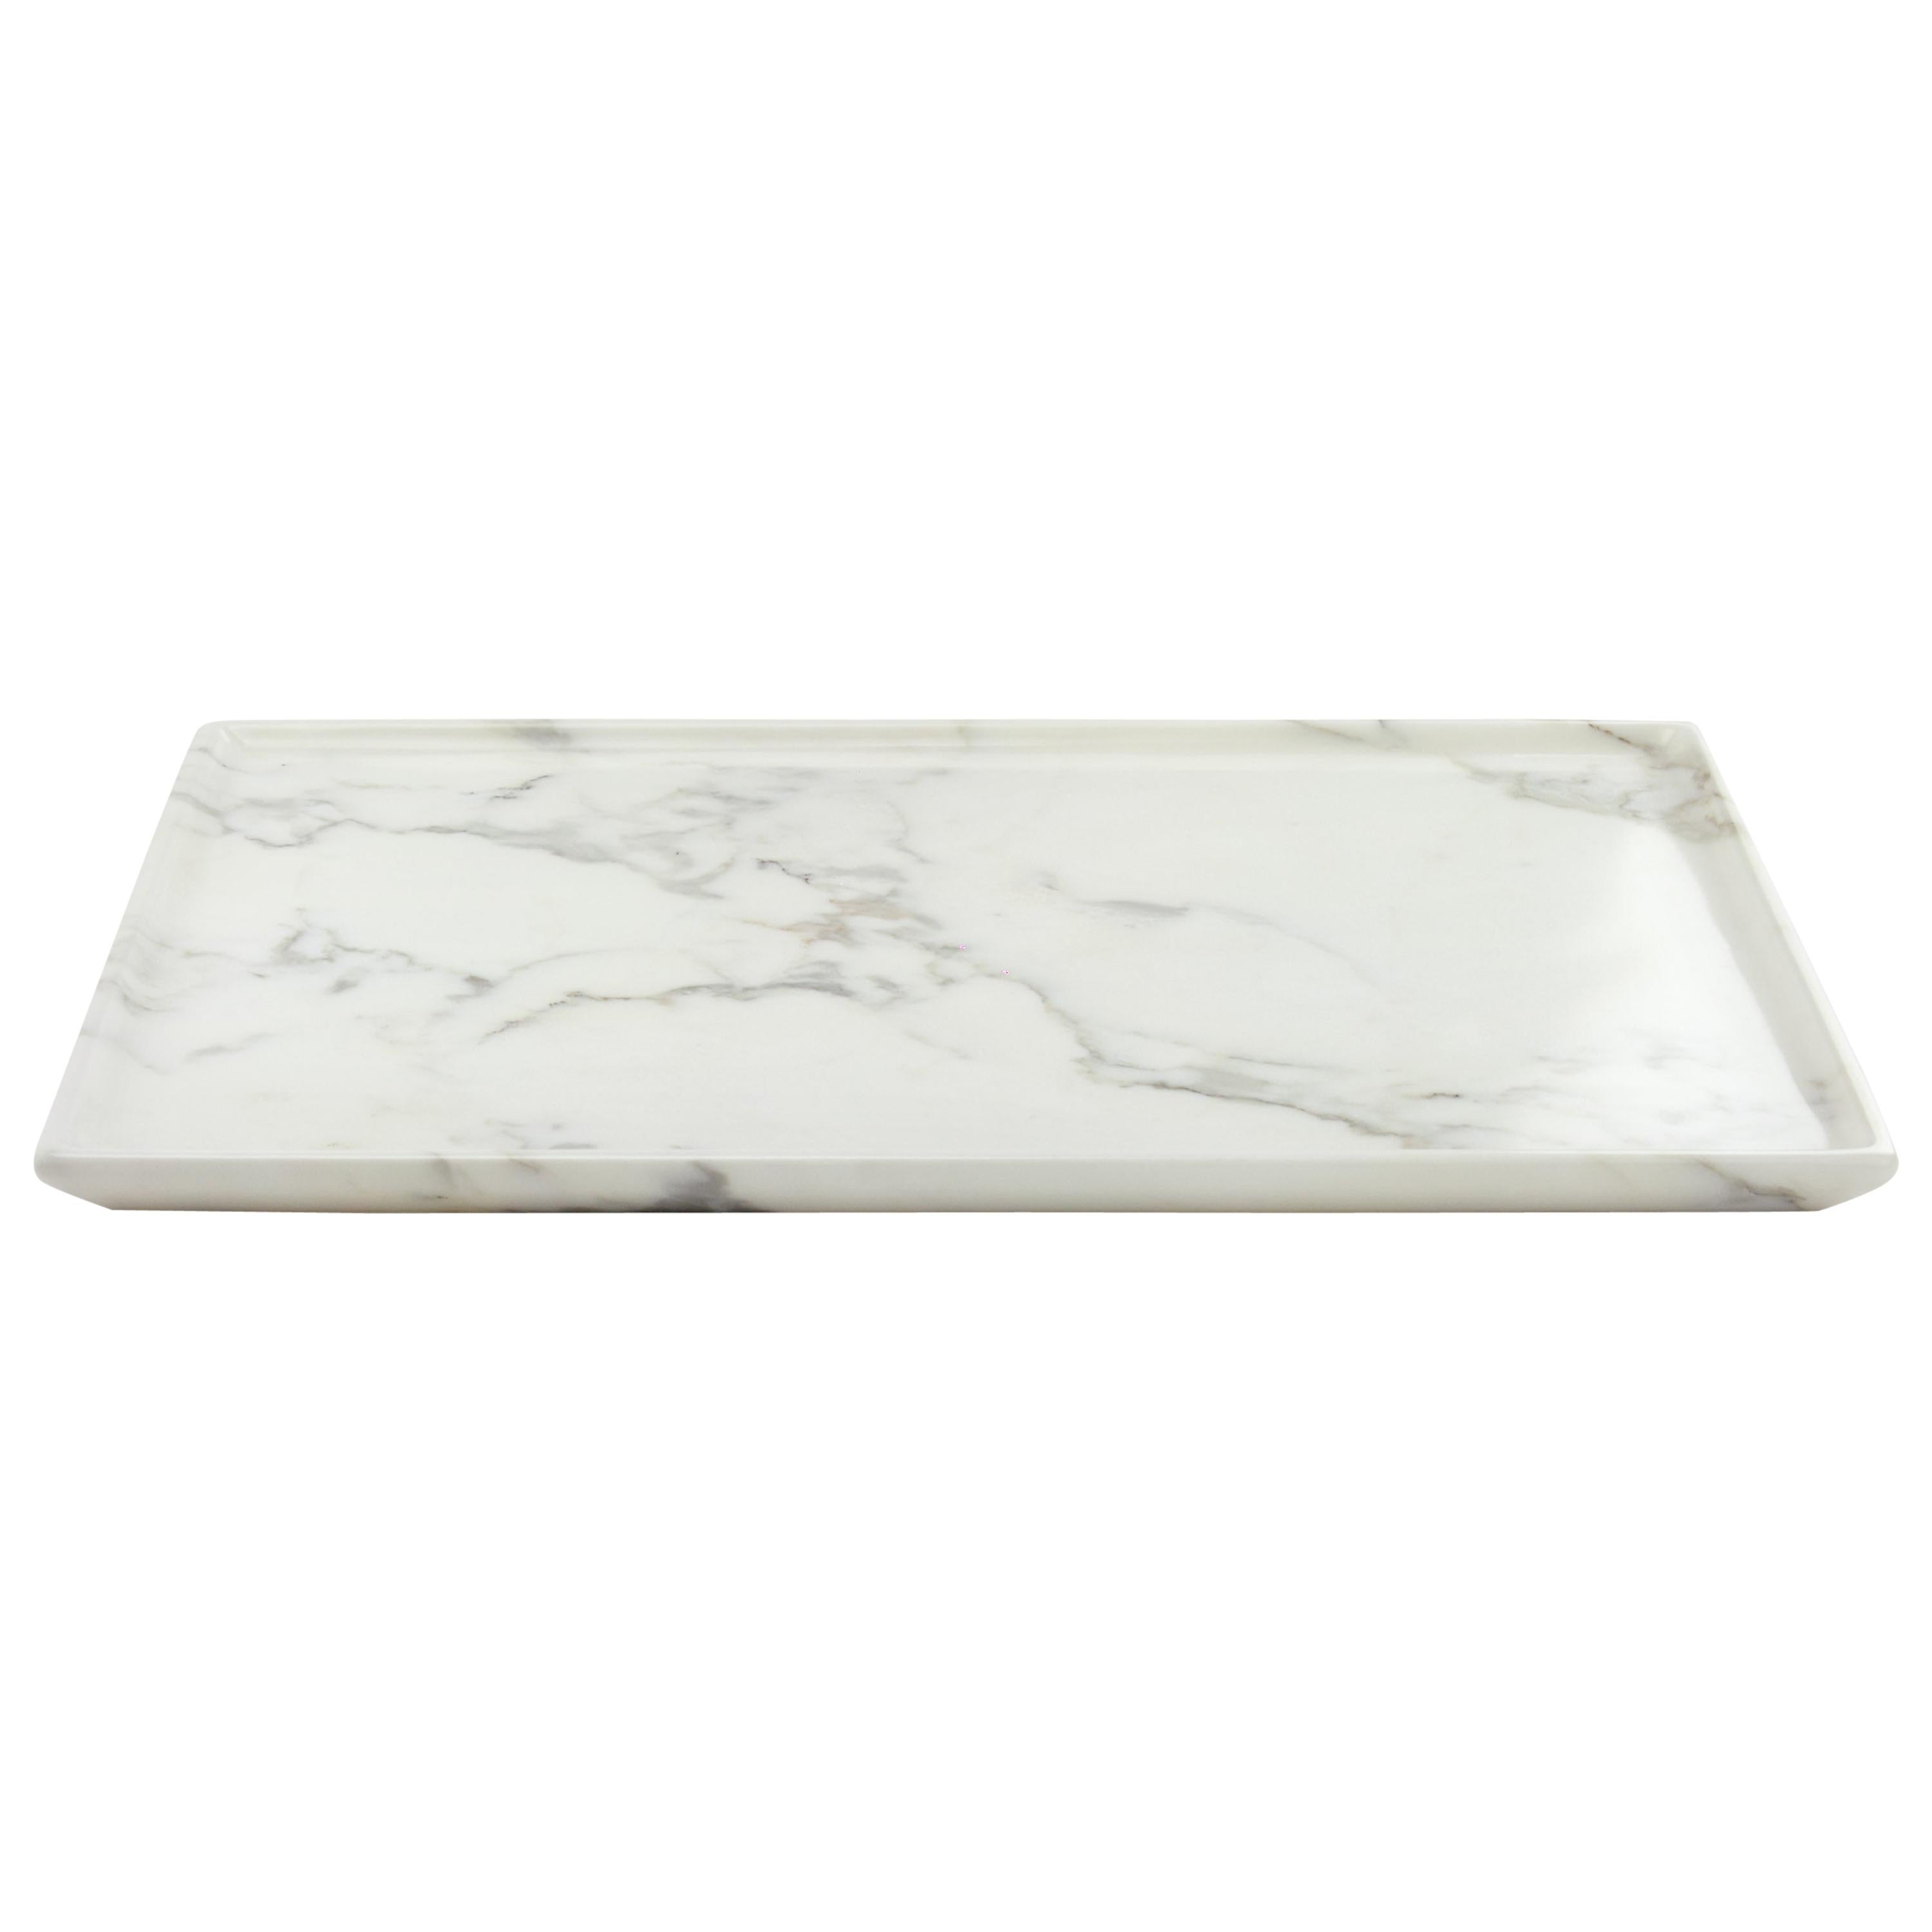 Plateau rectangulaire sculpté à la main dans un bloc de marbre blanc, fabriqué en Italie en vente